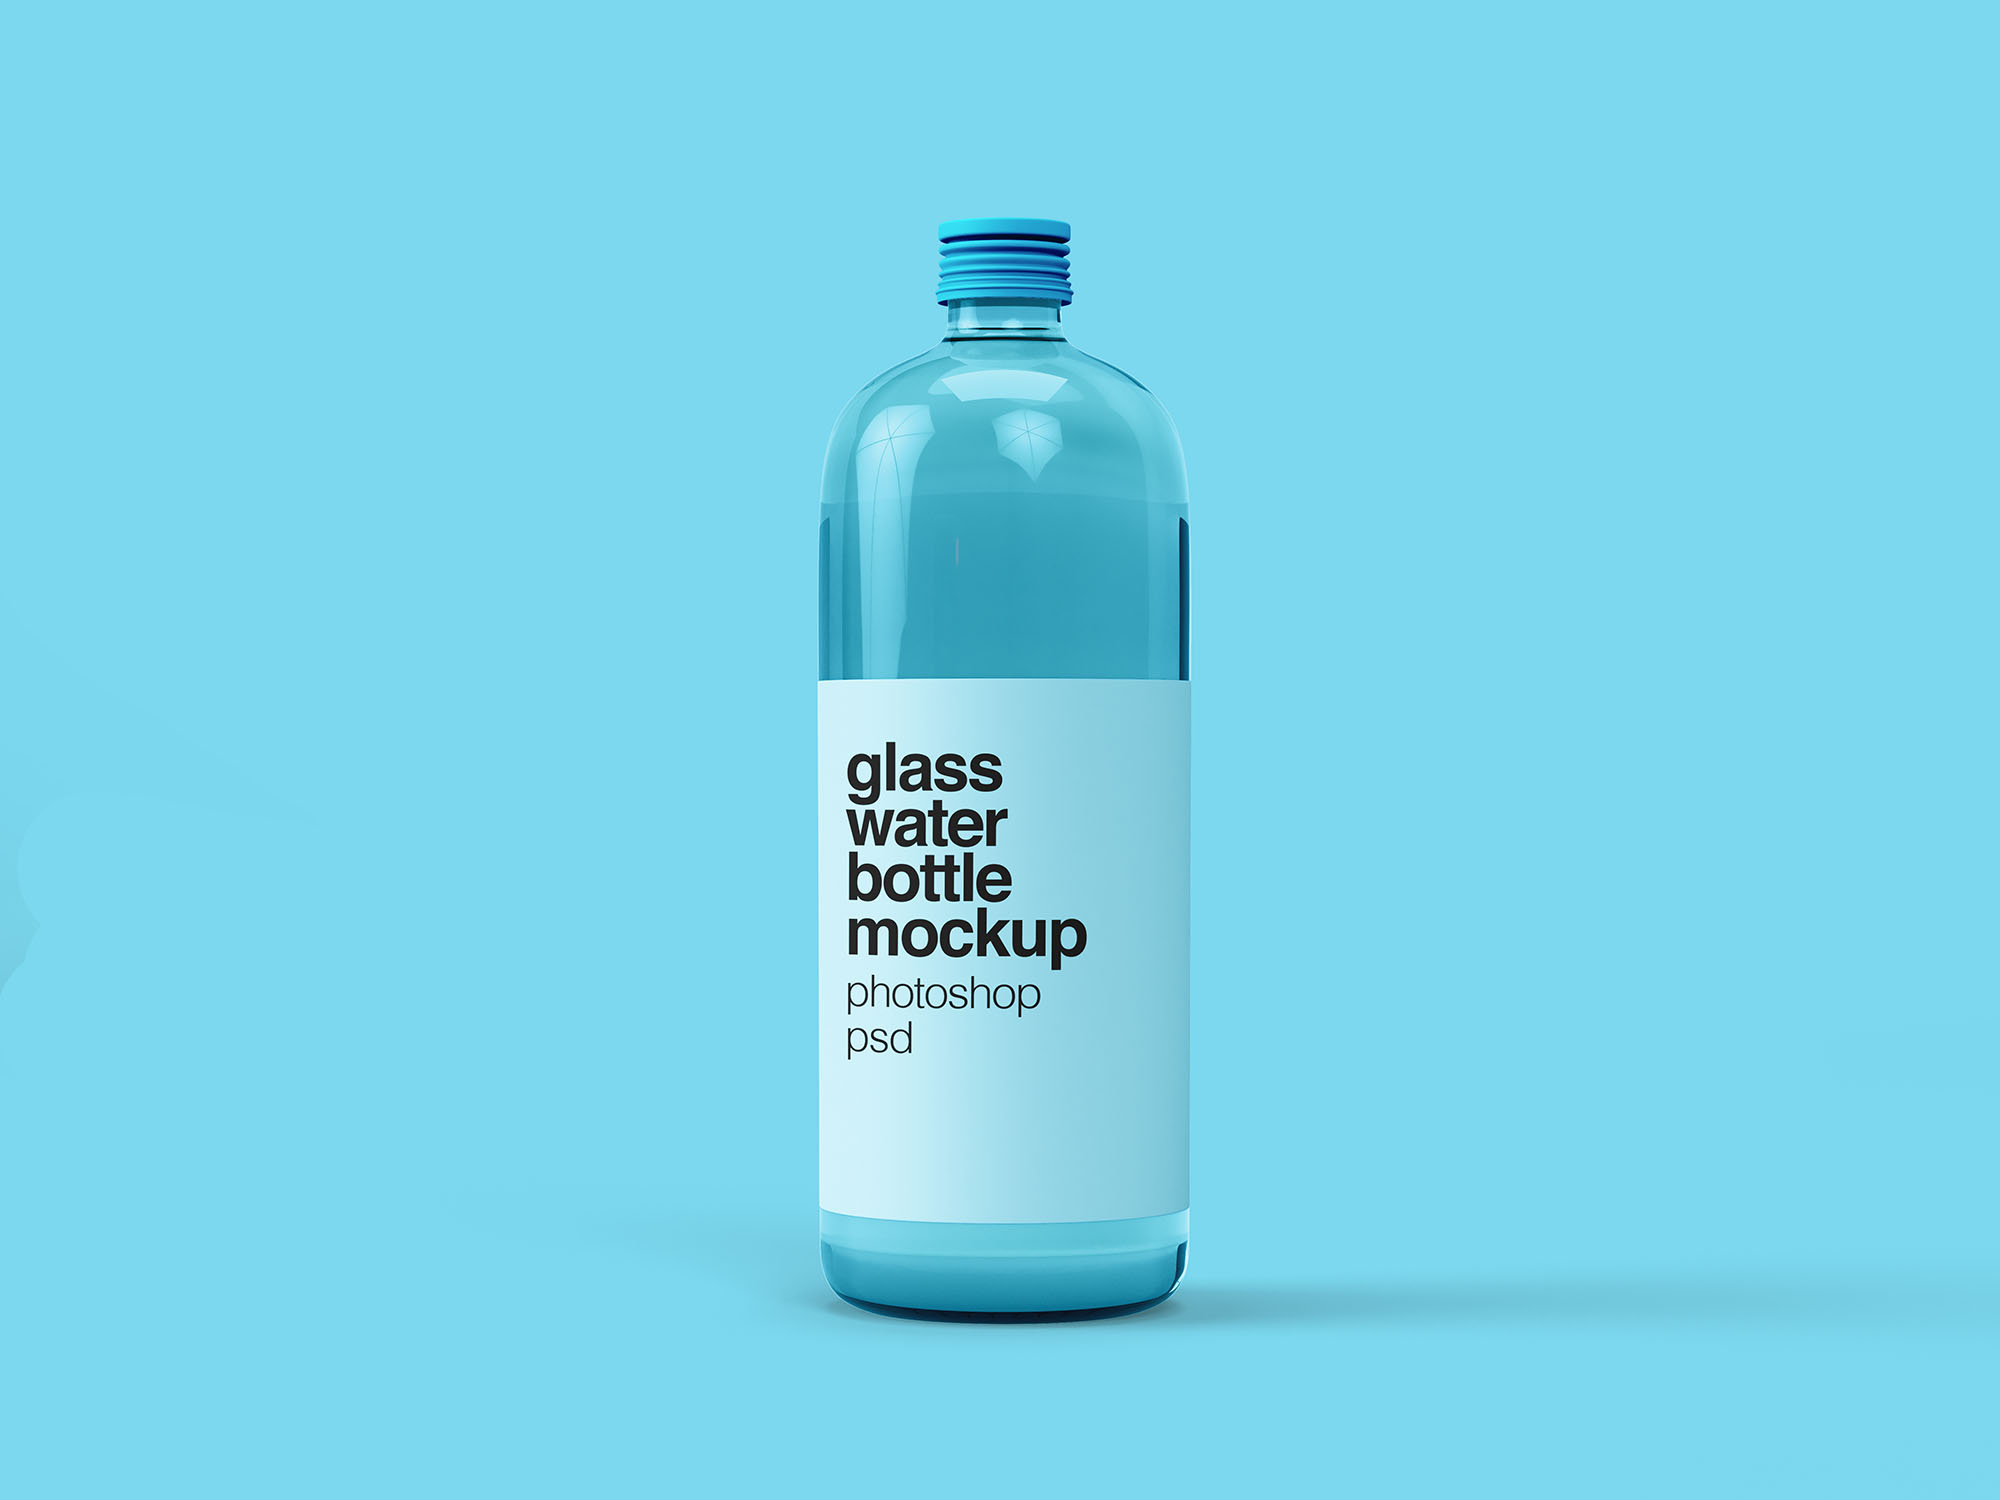 饮用水玻璃瓶外观设计图样机模板 Glass Water Bottle Mockup插图(1)